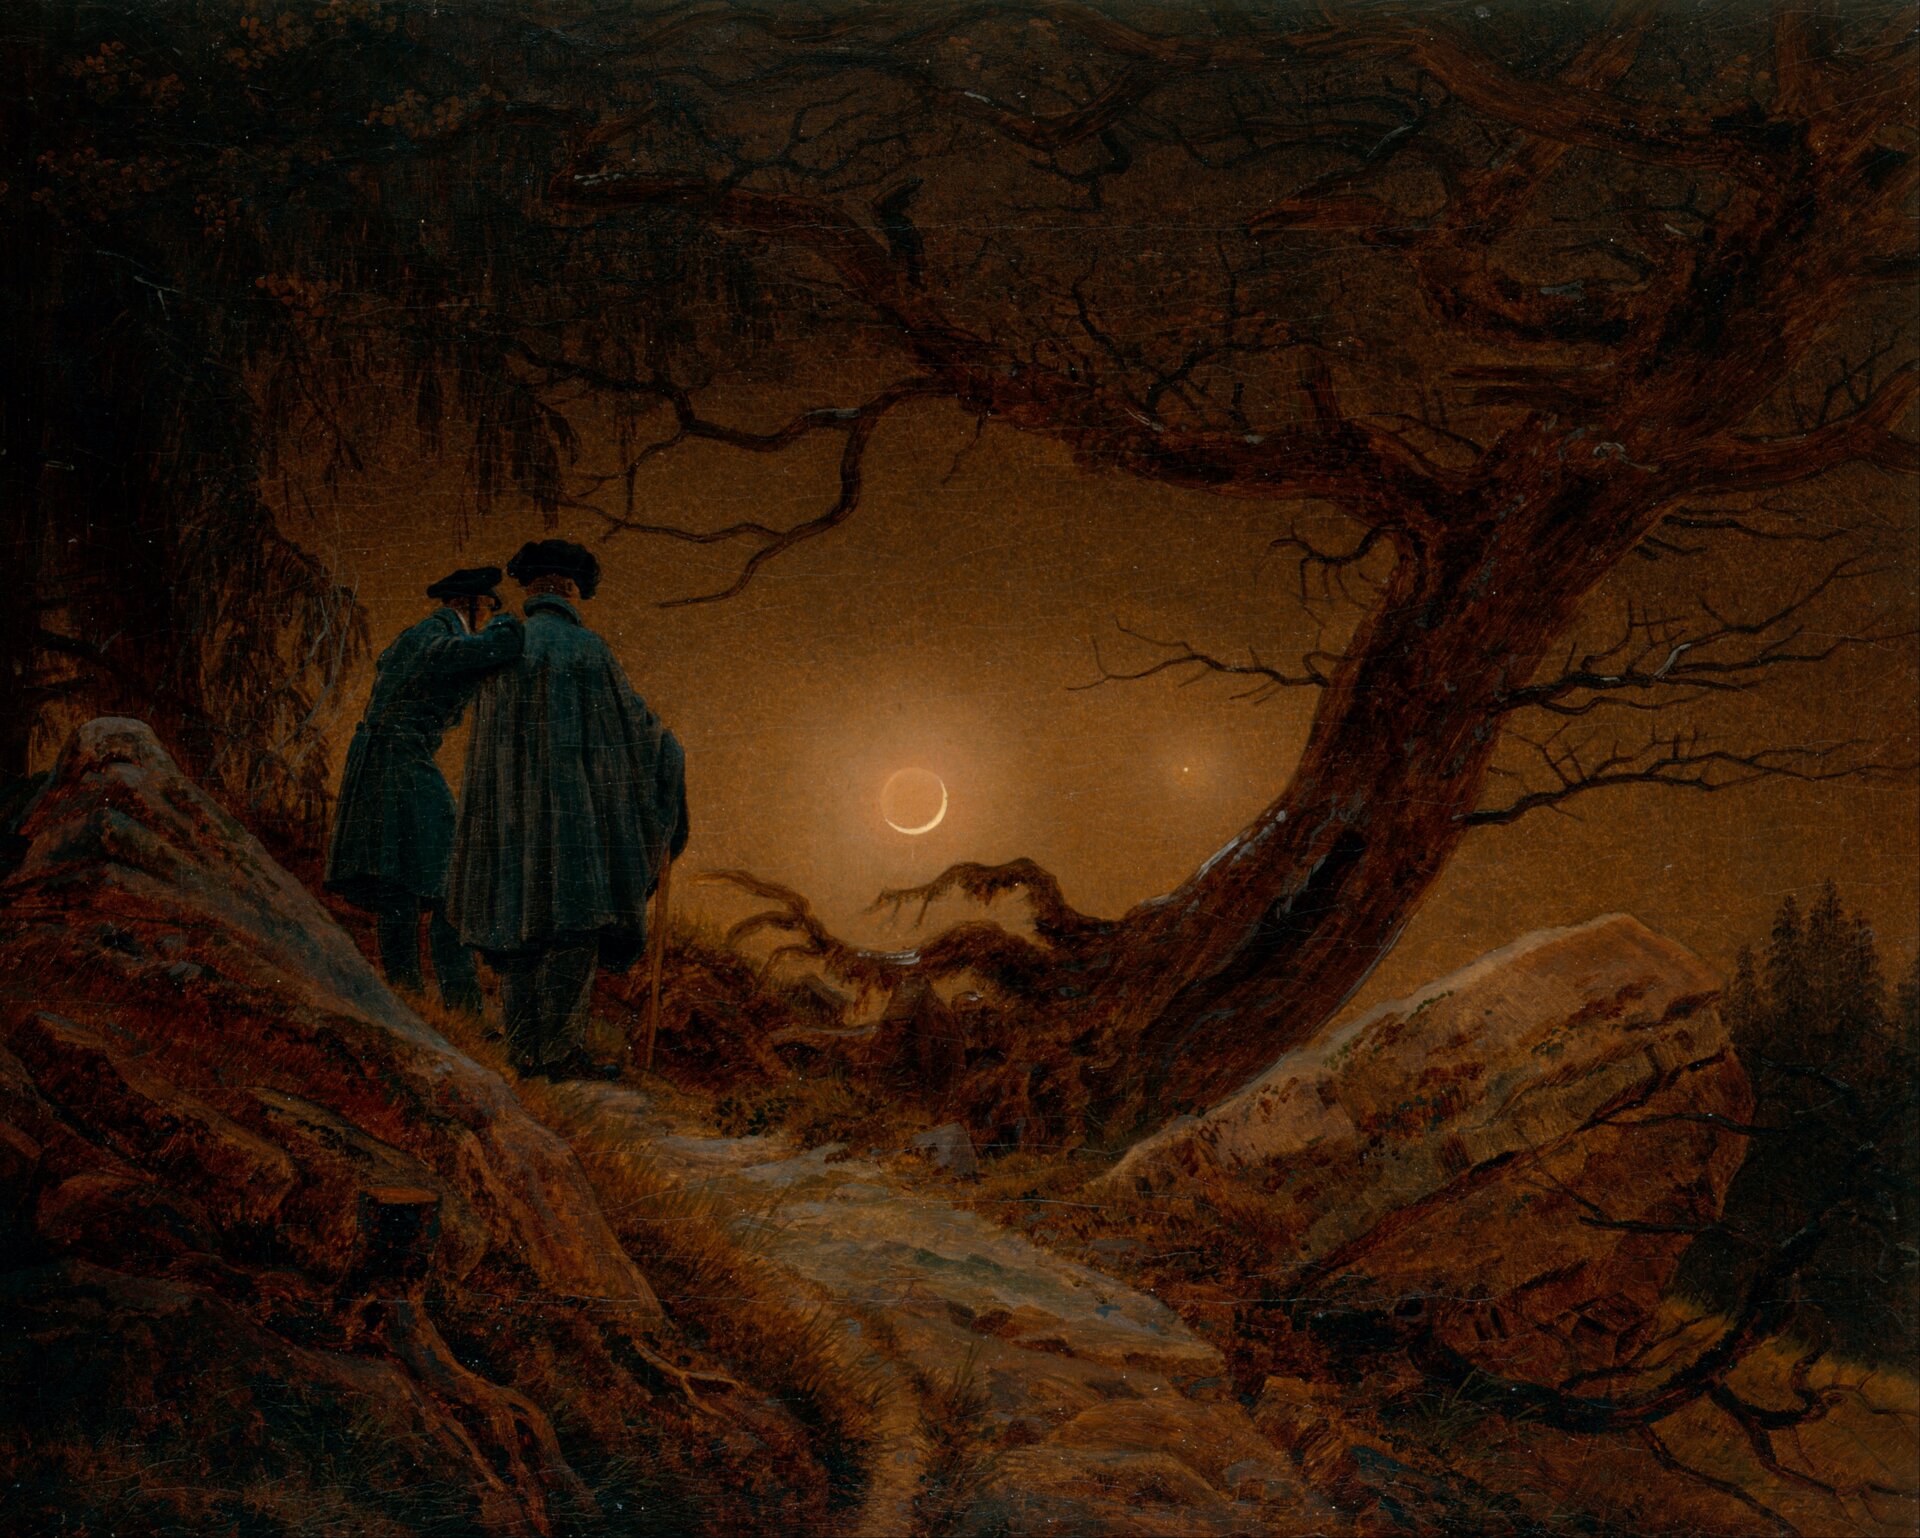 Dwaj mężczyźni obserwujący księżyc Źródło: Caspar David Friedrich, Dwaj mężczyźni obserwujący księżyc, 1819, domena publiczna.